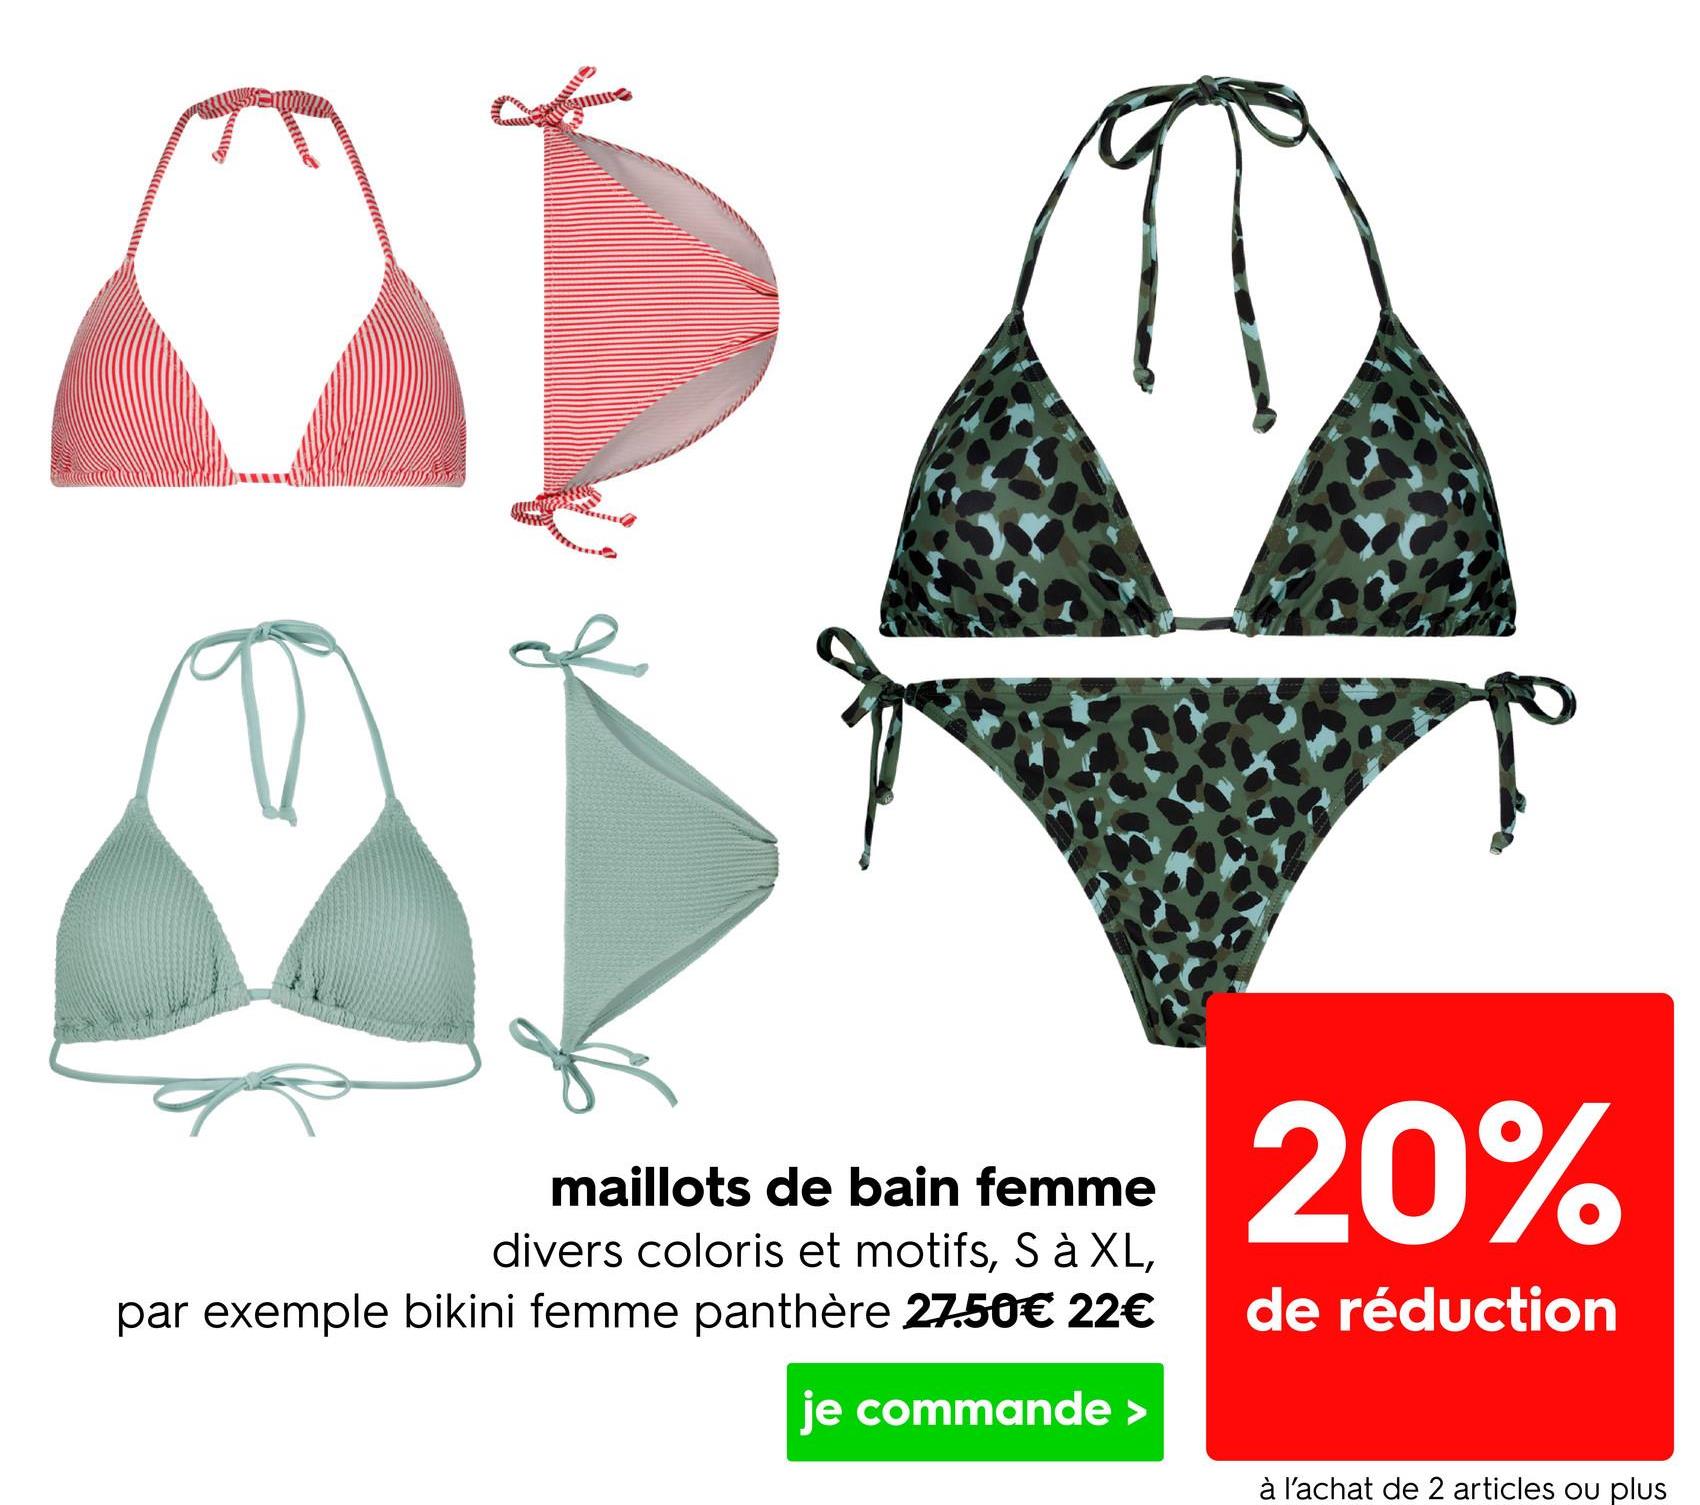 maillots de bain femme
divers coloris et motifs, S à XL,
par exemple bikini femme panthère 27.50€ 22€
je commande >
20%
de réduction
à l'achat de 2 articles ou plus